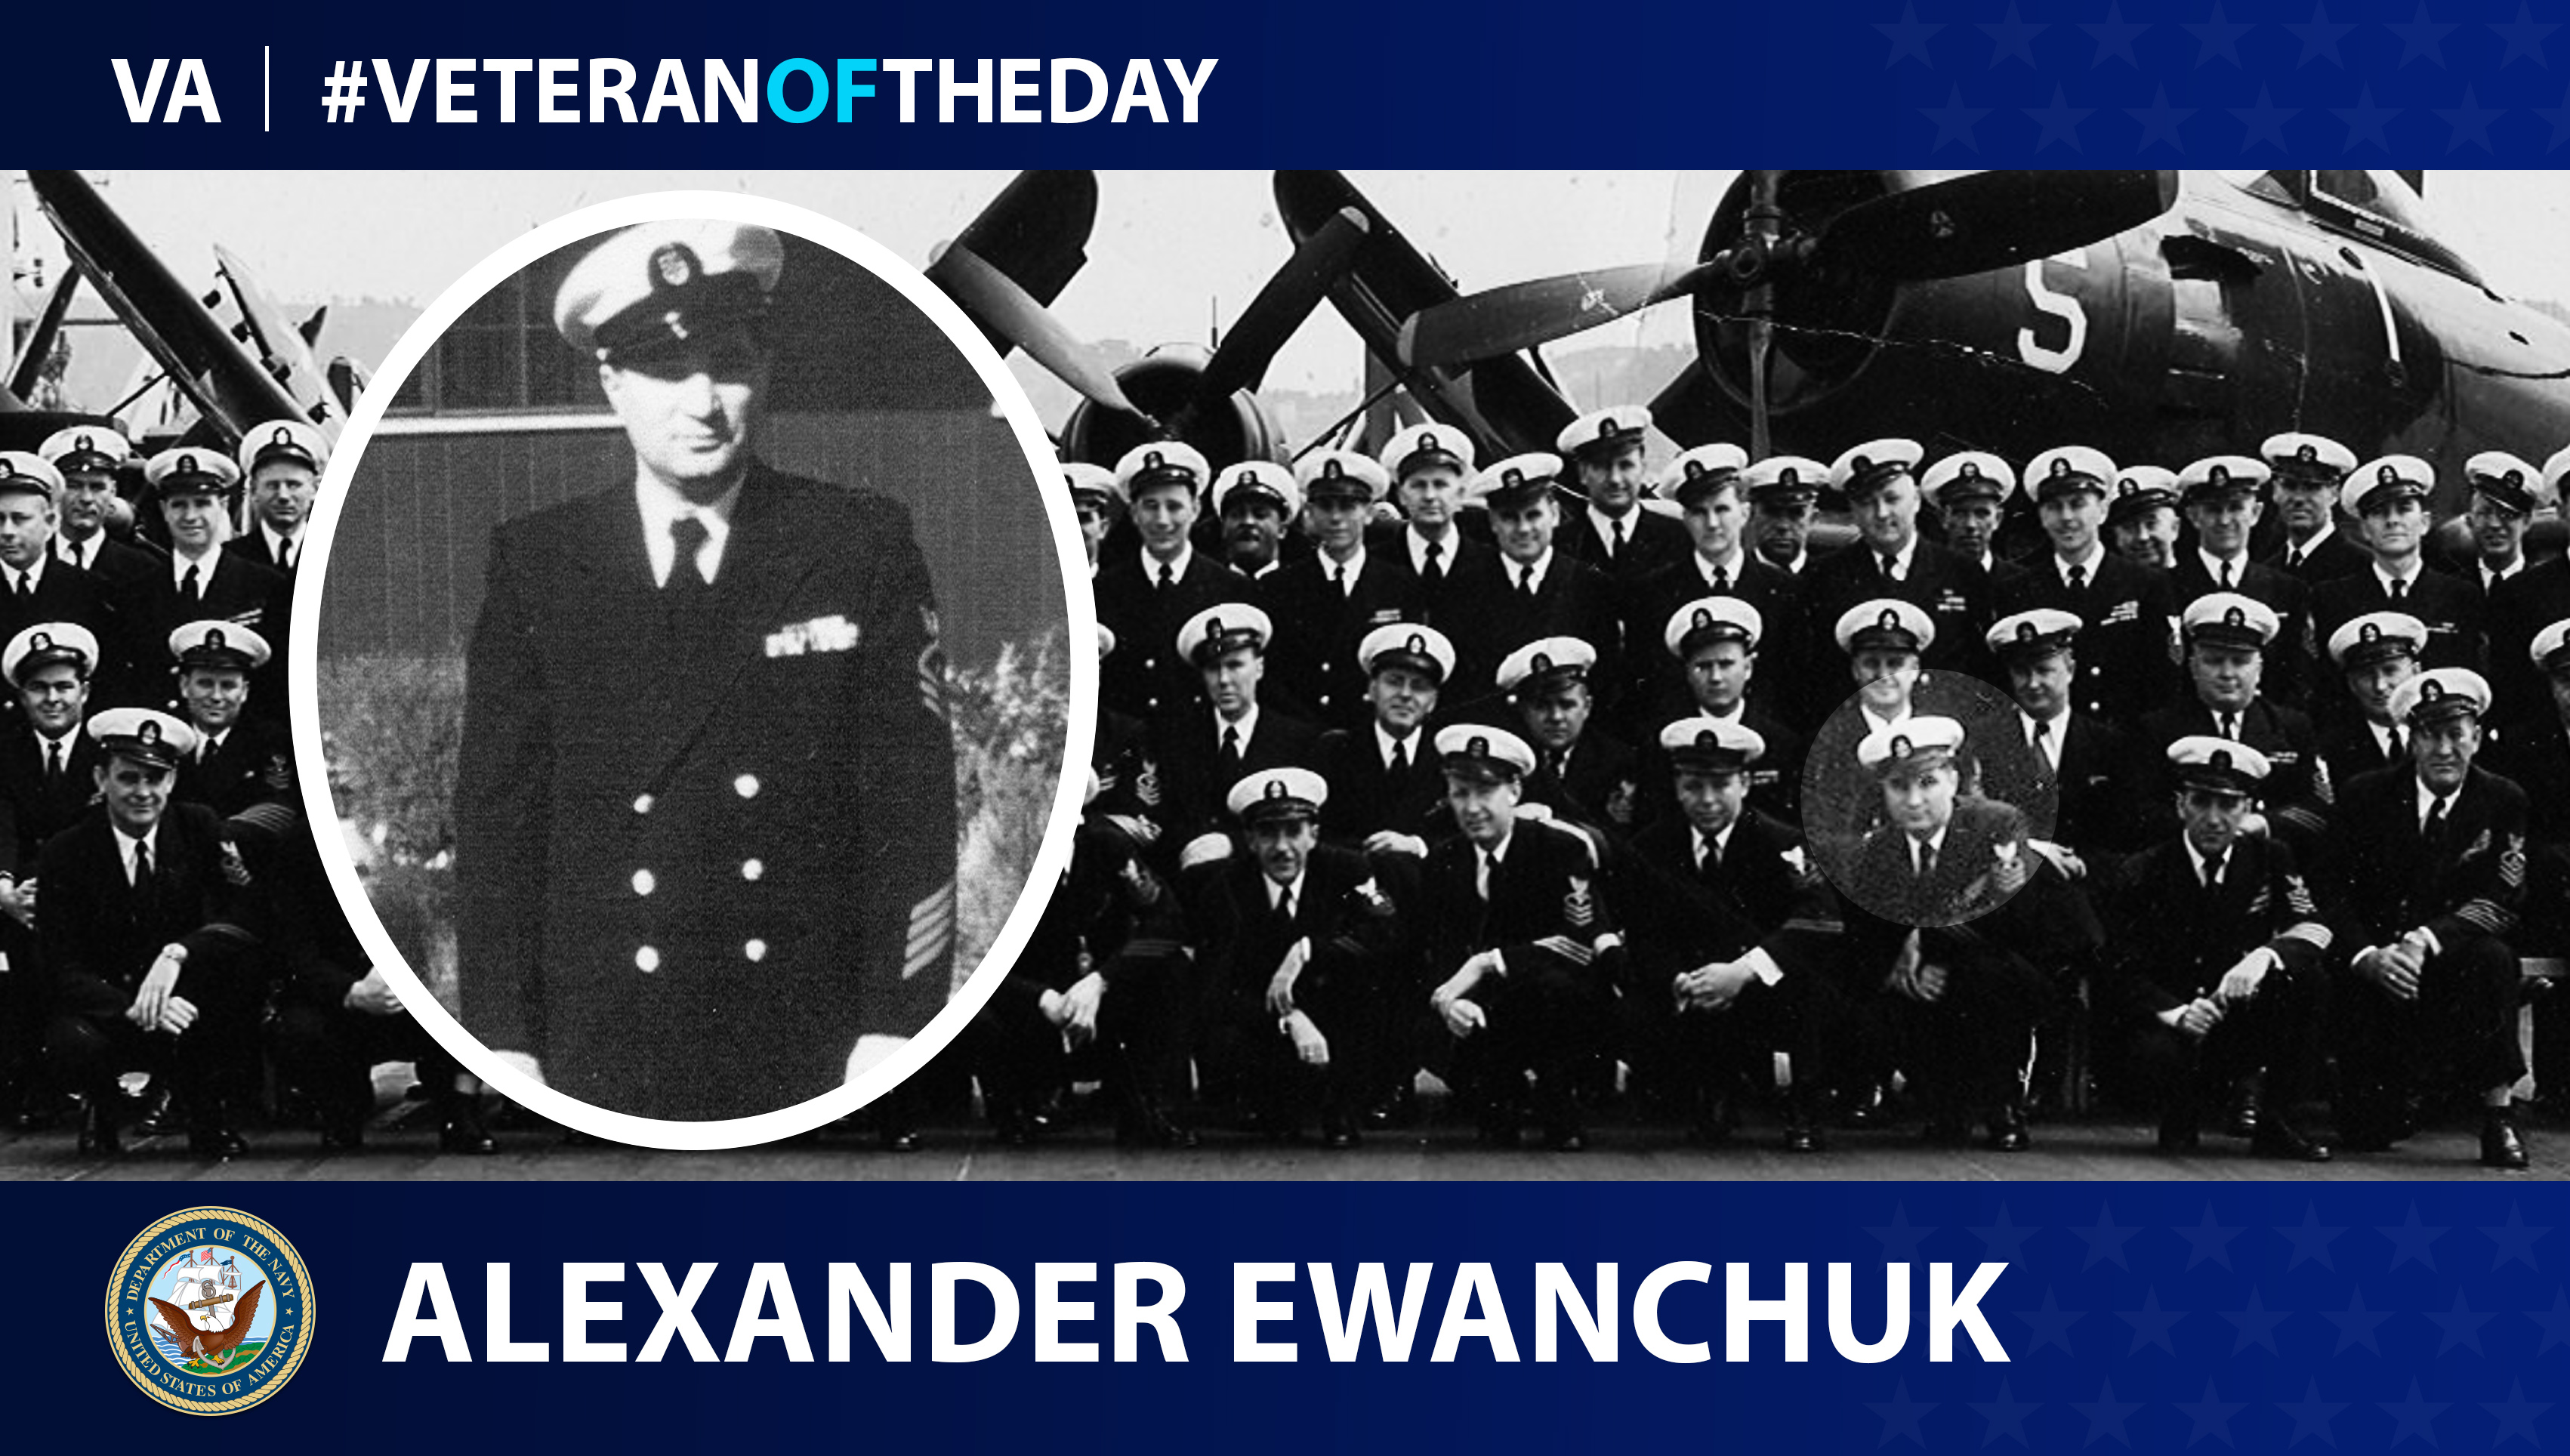 Navy Veteran Alexander Ewanchuk is today's Veteran of the Day.